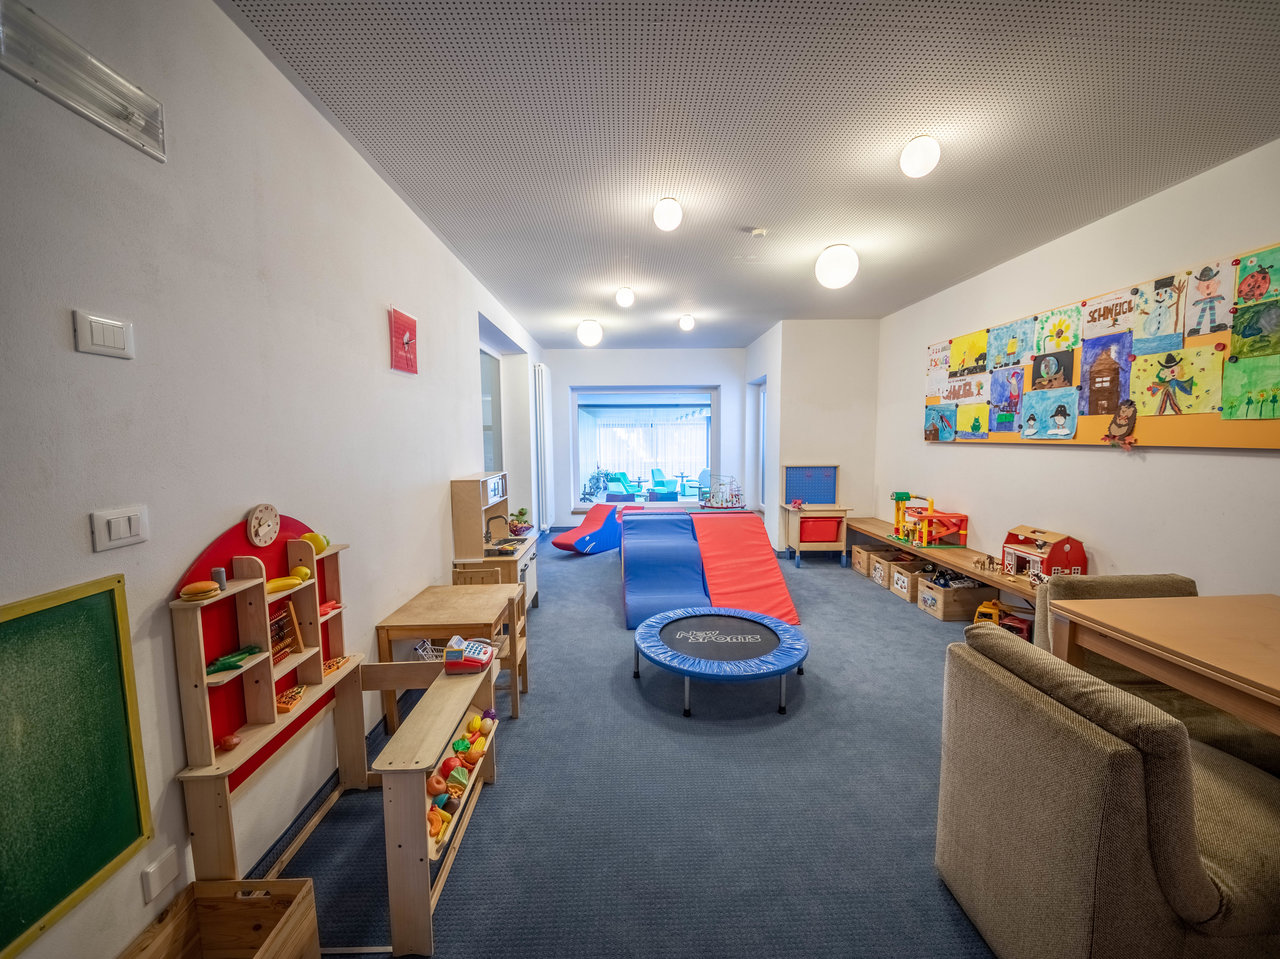 Hotel im Meraner Land mit Spielzimmer für kleine Kinder: Spielküche, Kaufladen, Autos, Puppen, Legos, u.v.m.